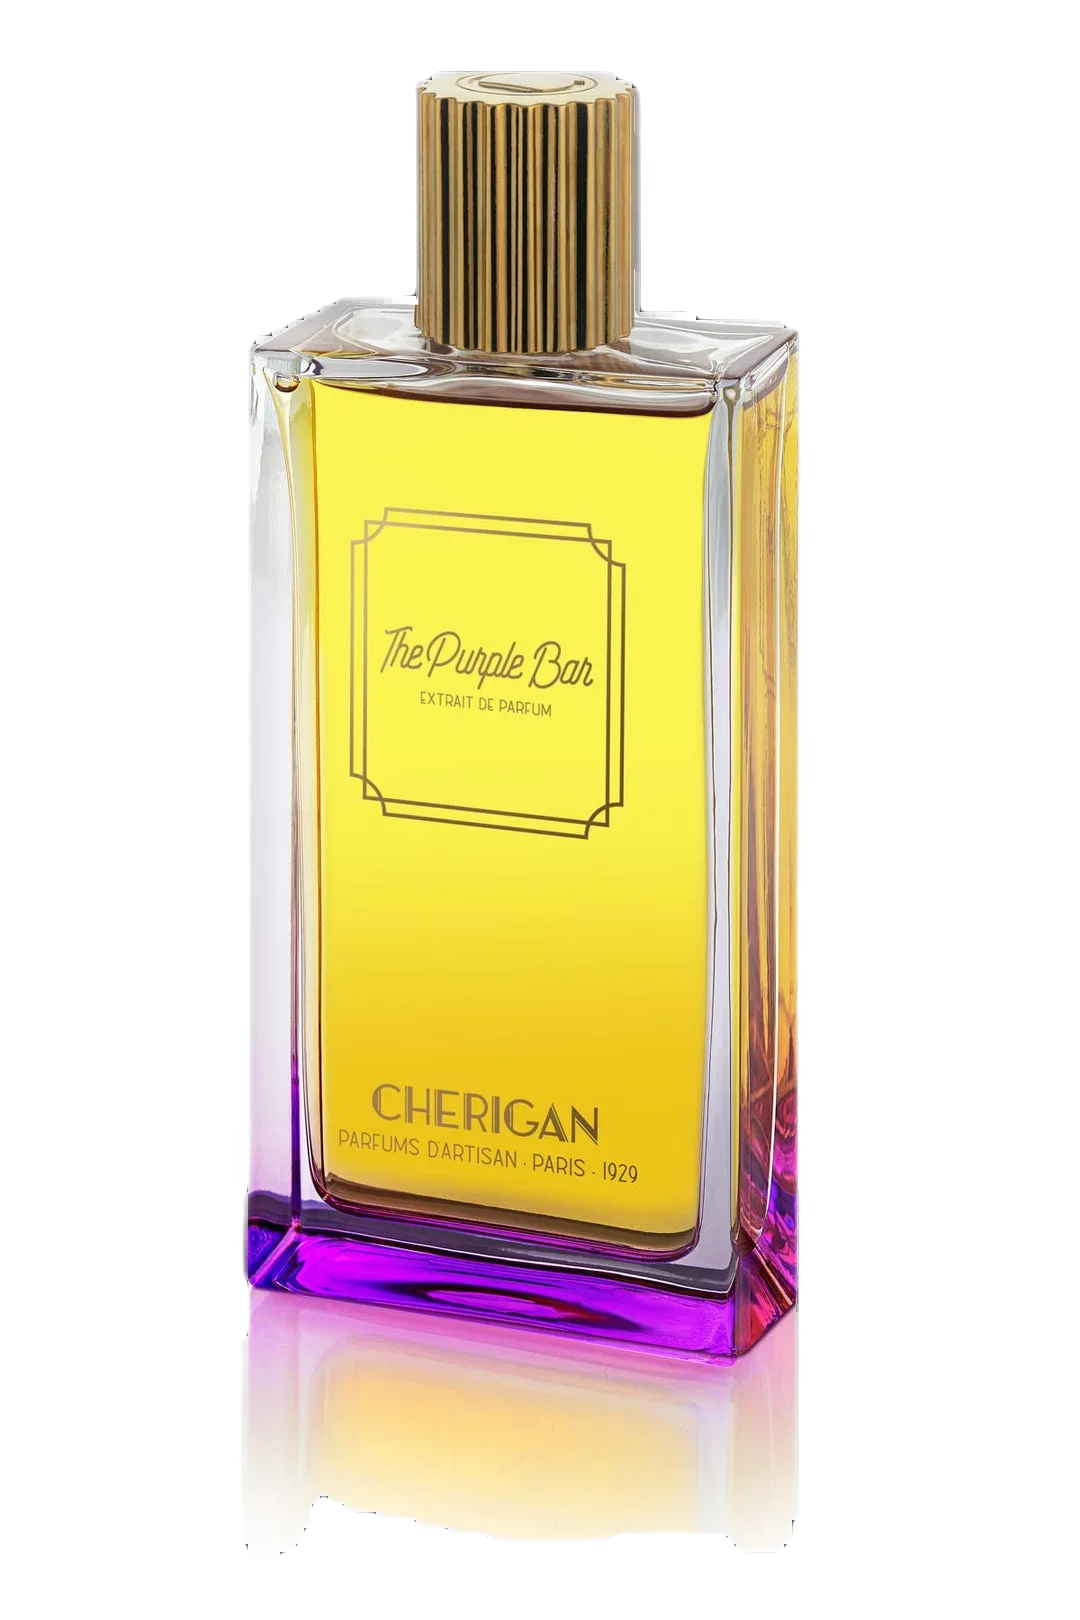 Cherigan THE PURPLE BAR Extrait de Parfum